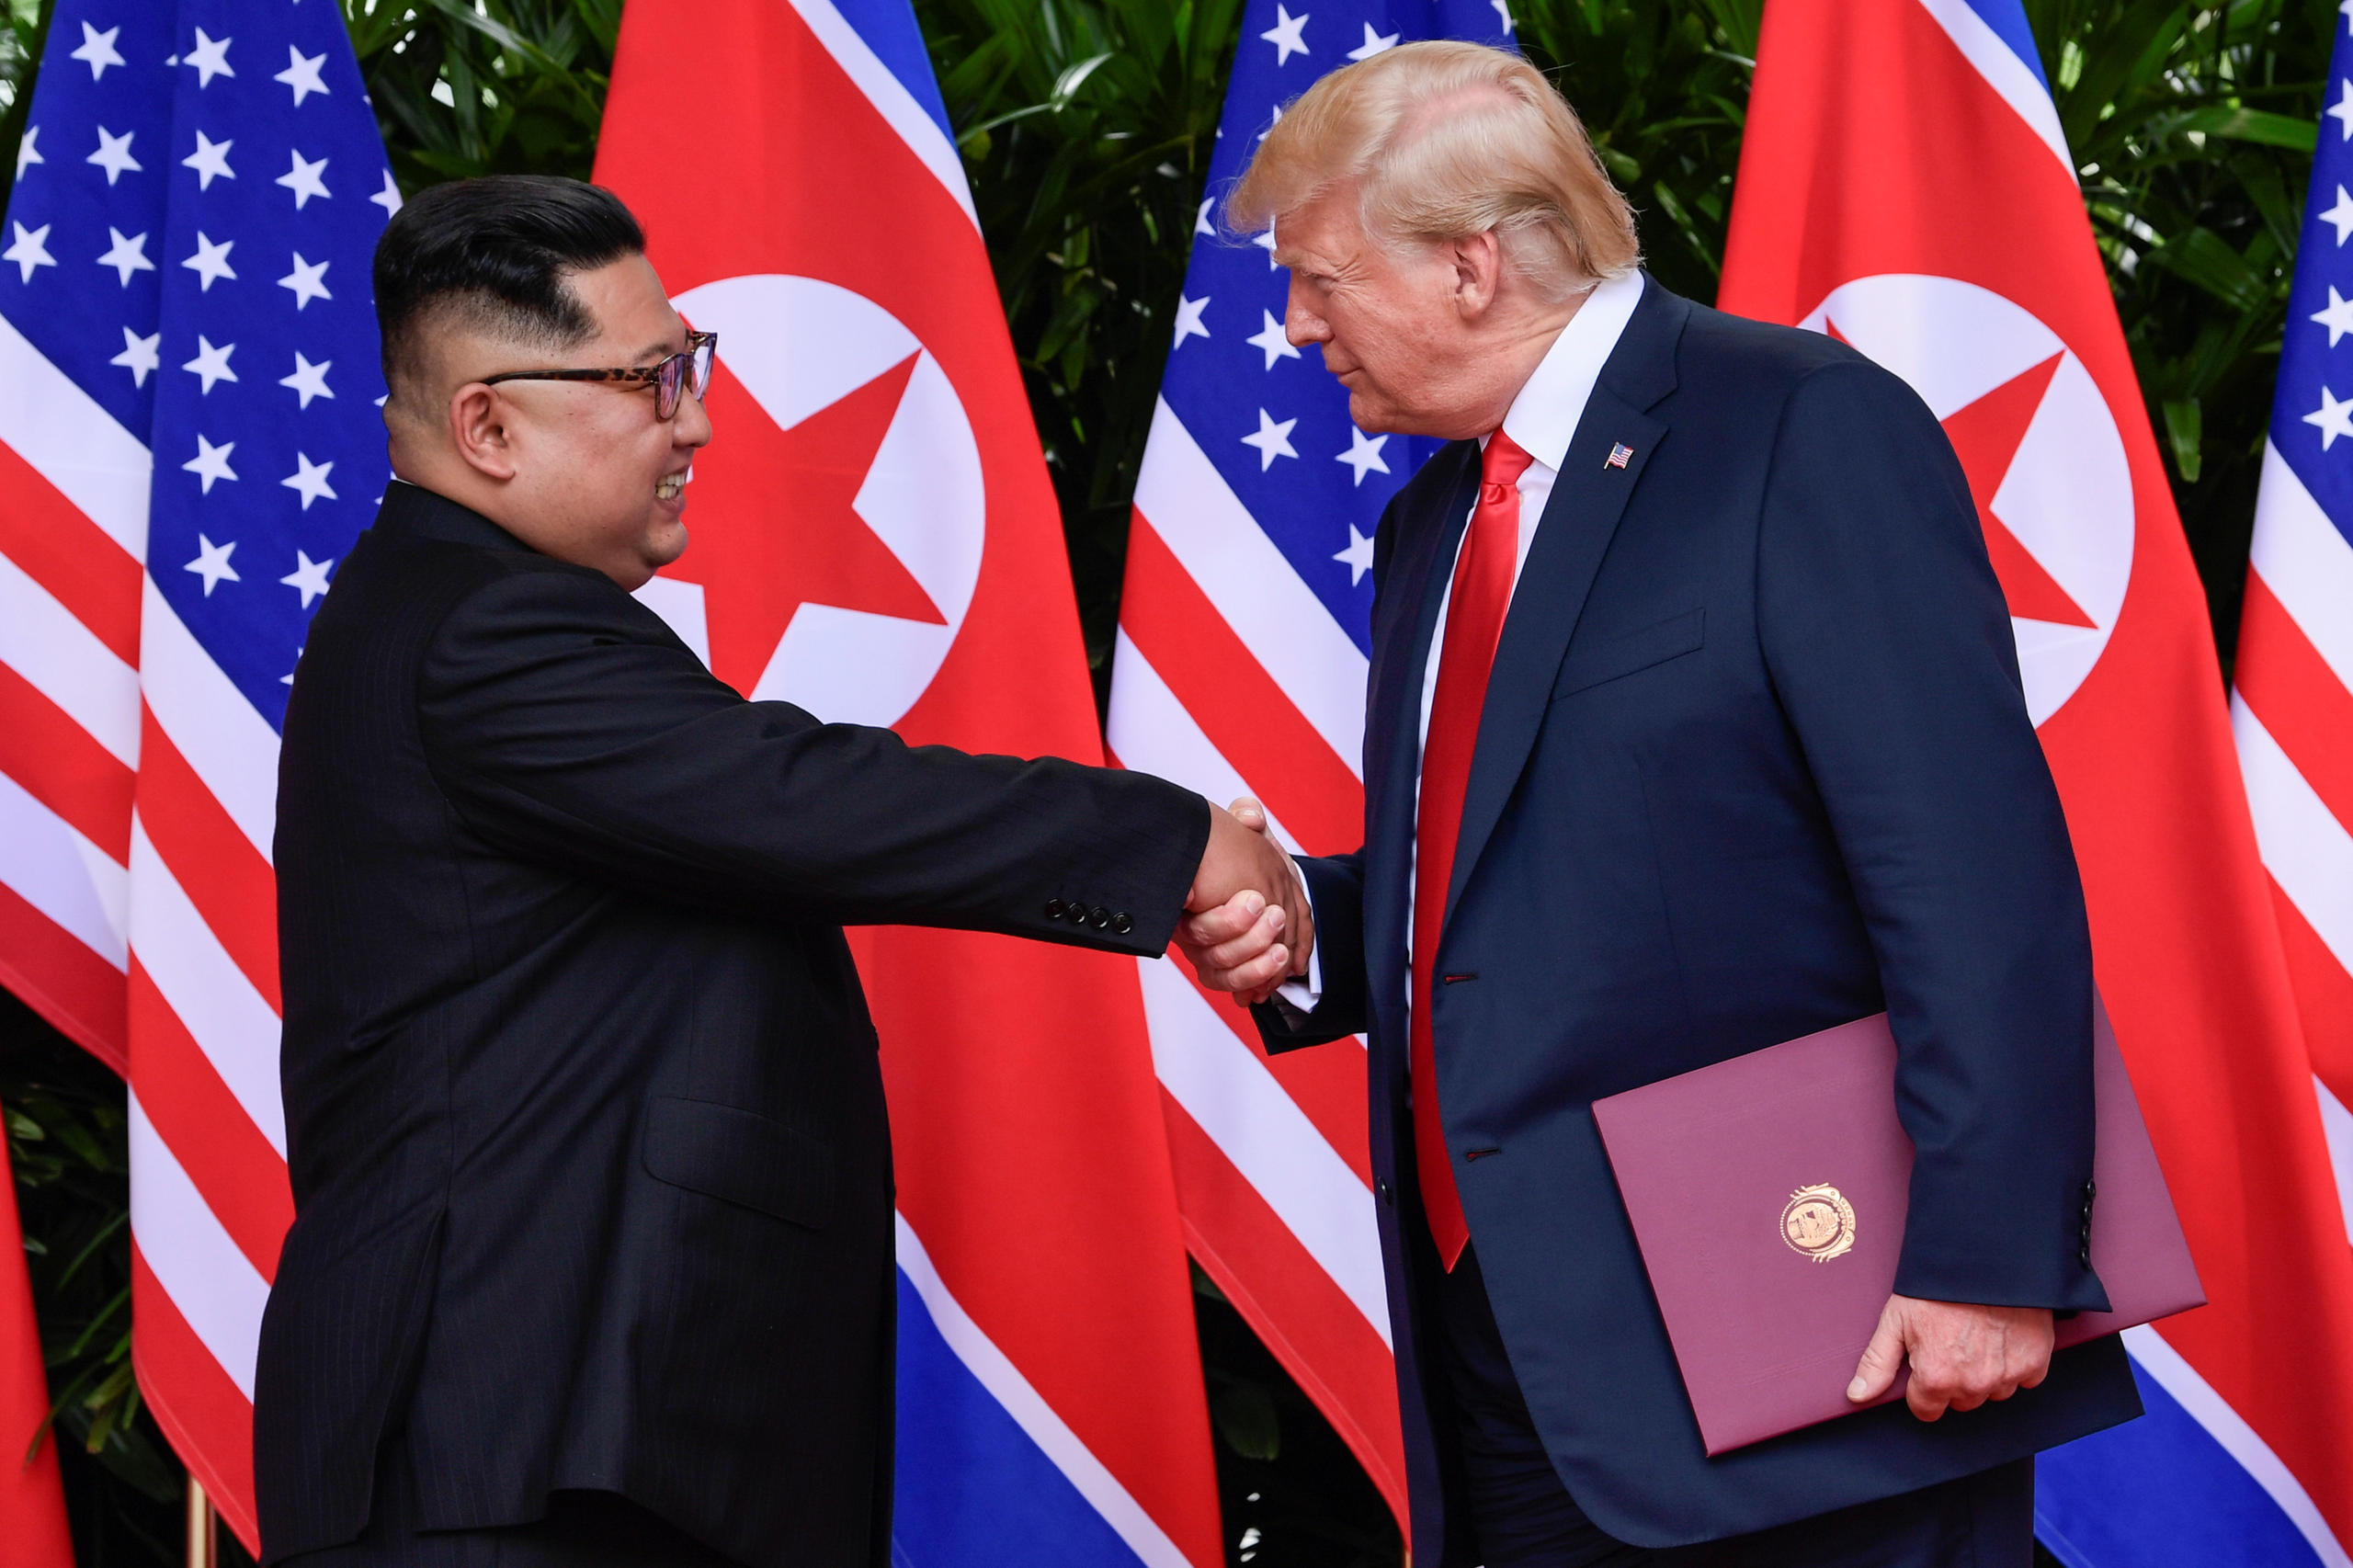 Trump meets Kim